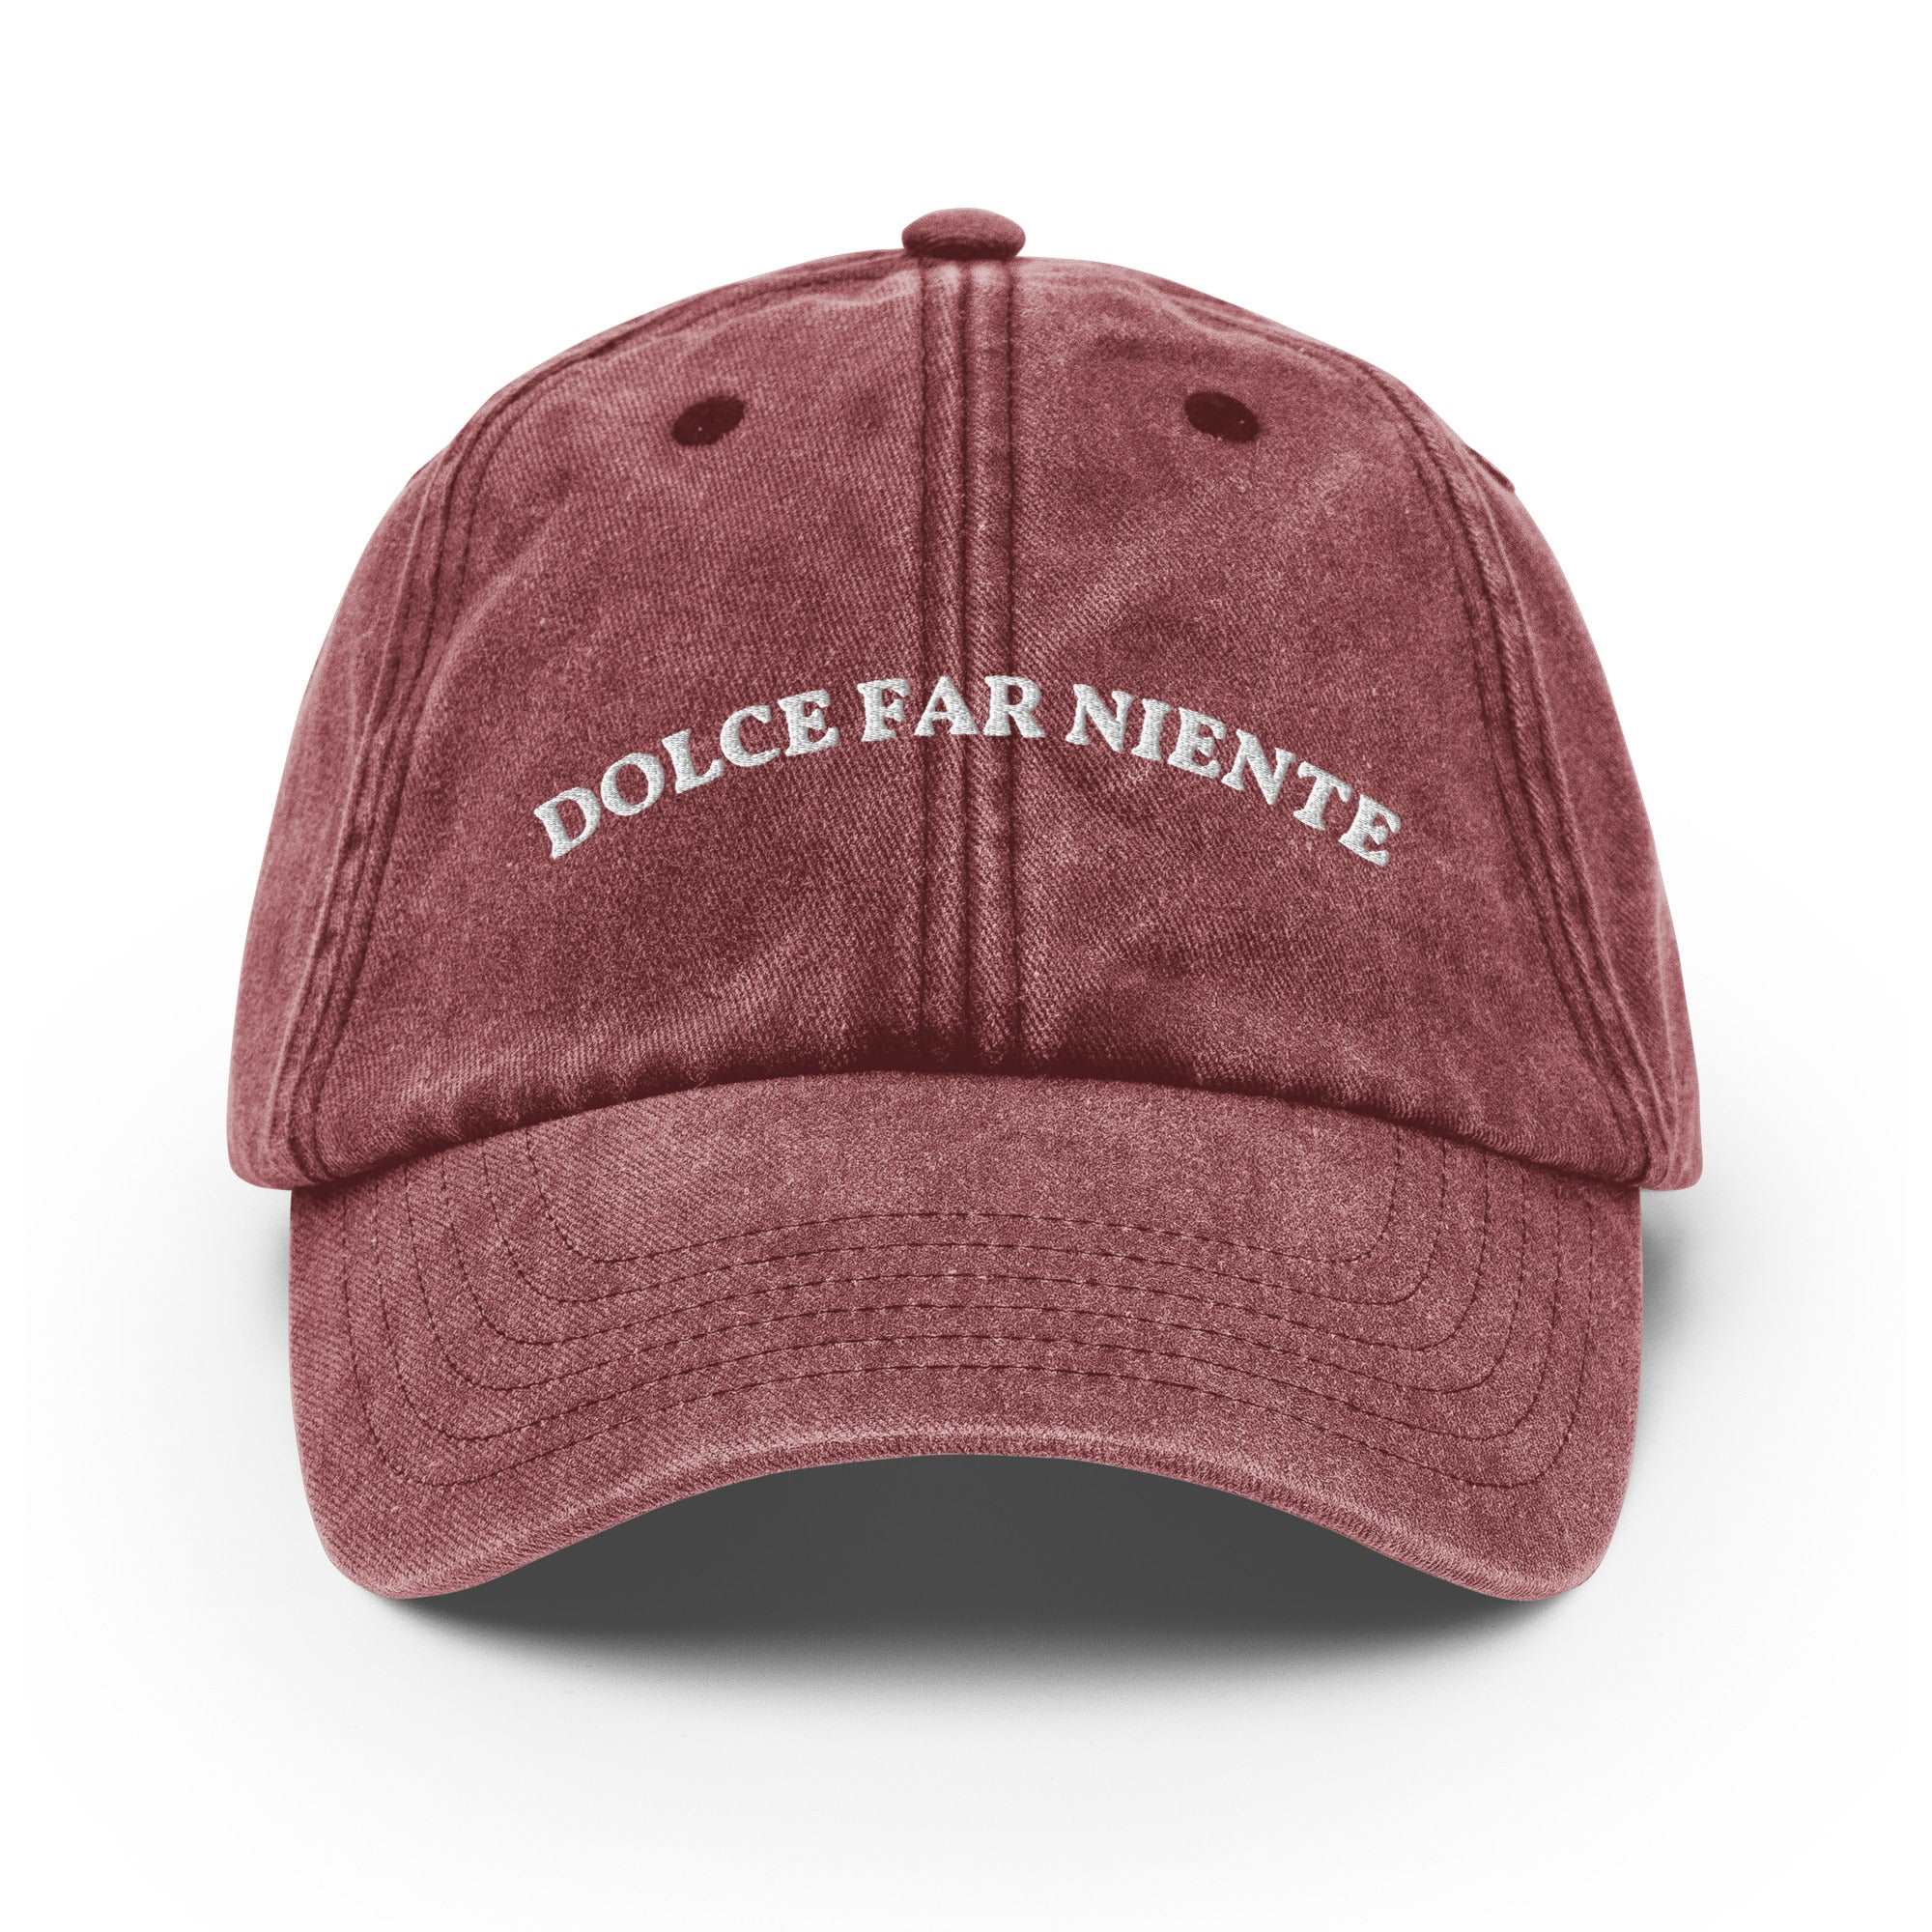 Dolce Far Niente Vintage Cap - The Refined Spirit